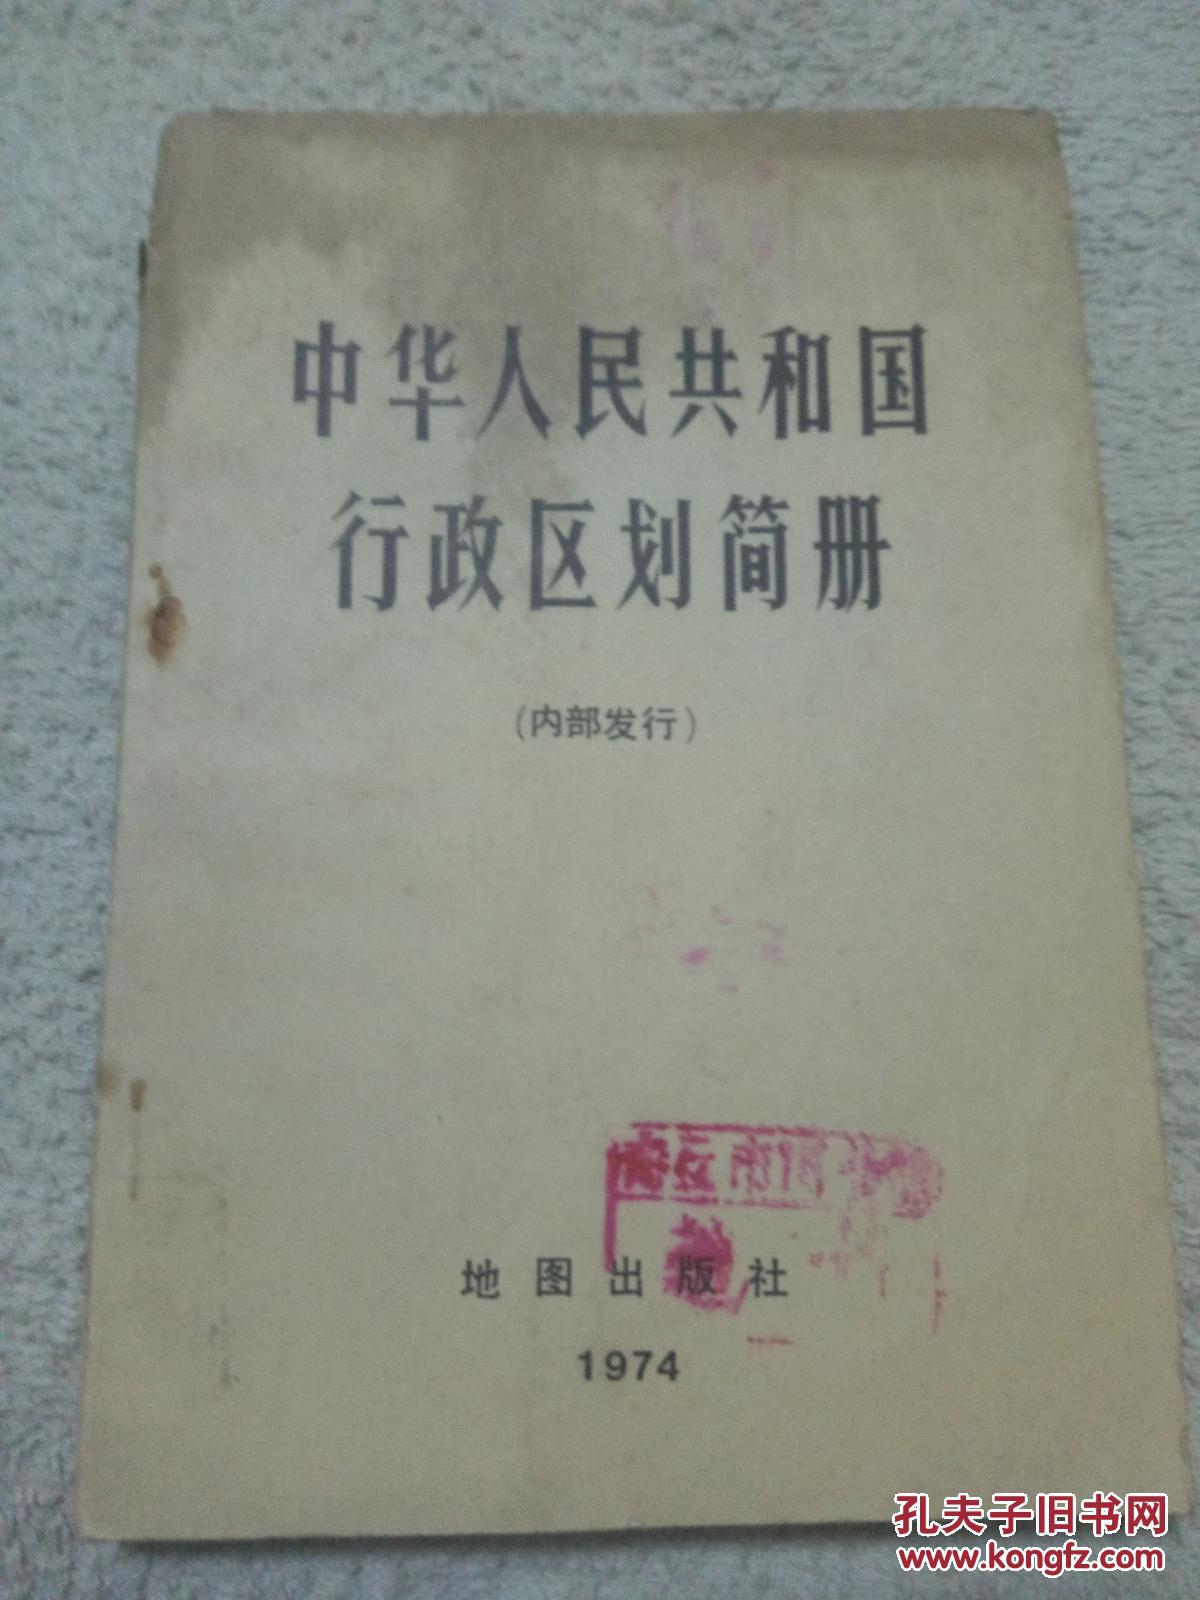 中华人民共和国行政区划简册1974一版一印